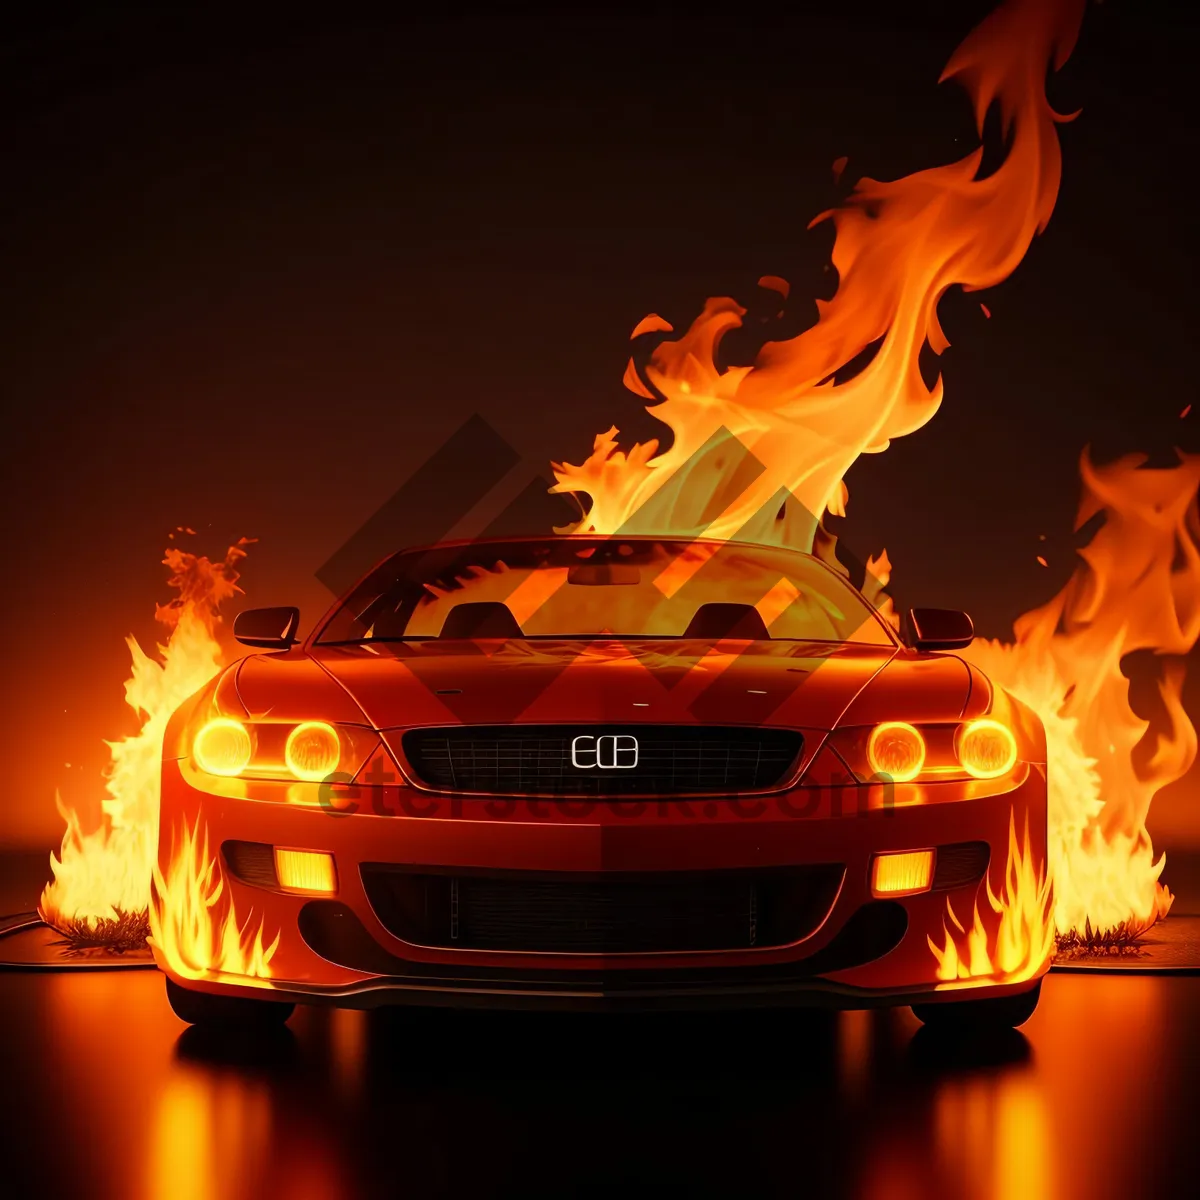 Picture of Blazing Inferno: Fiery Bonfire in Orange Glow